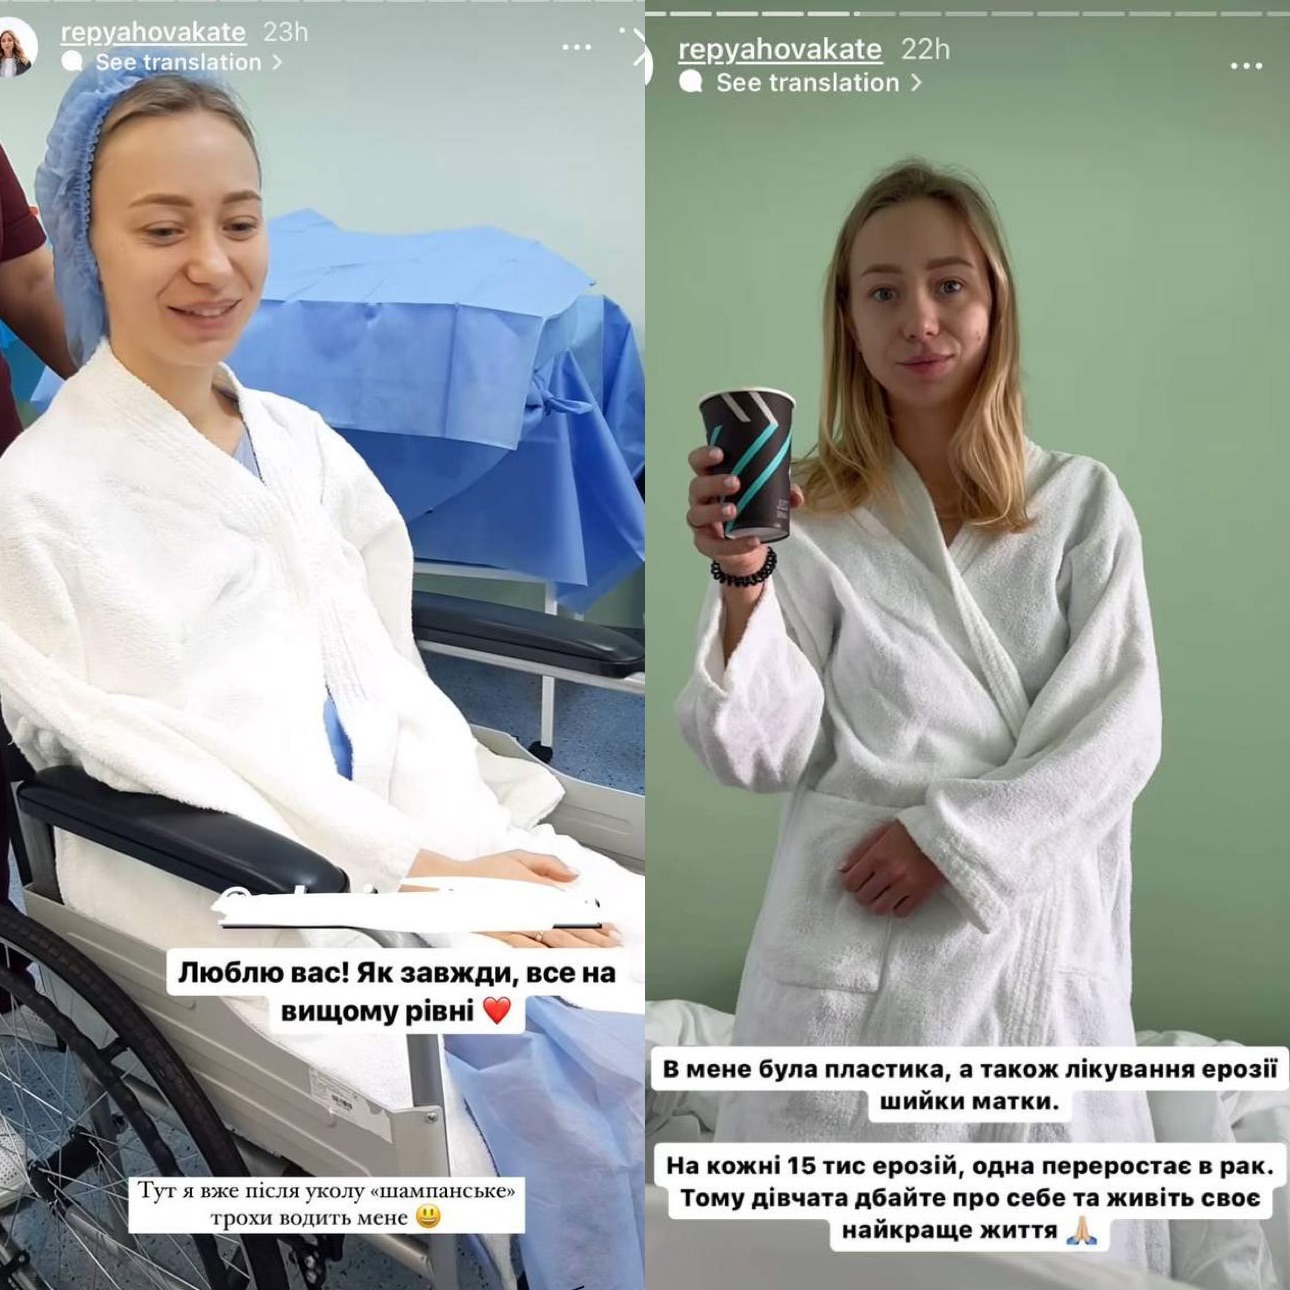 29-річна Катерина Репяхова вперше розповіла про складну операцію та назвала причину. Фото з Instagram @ repyahovakate